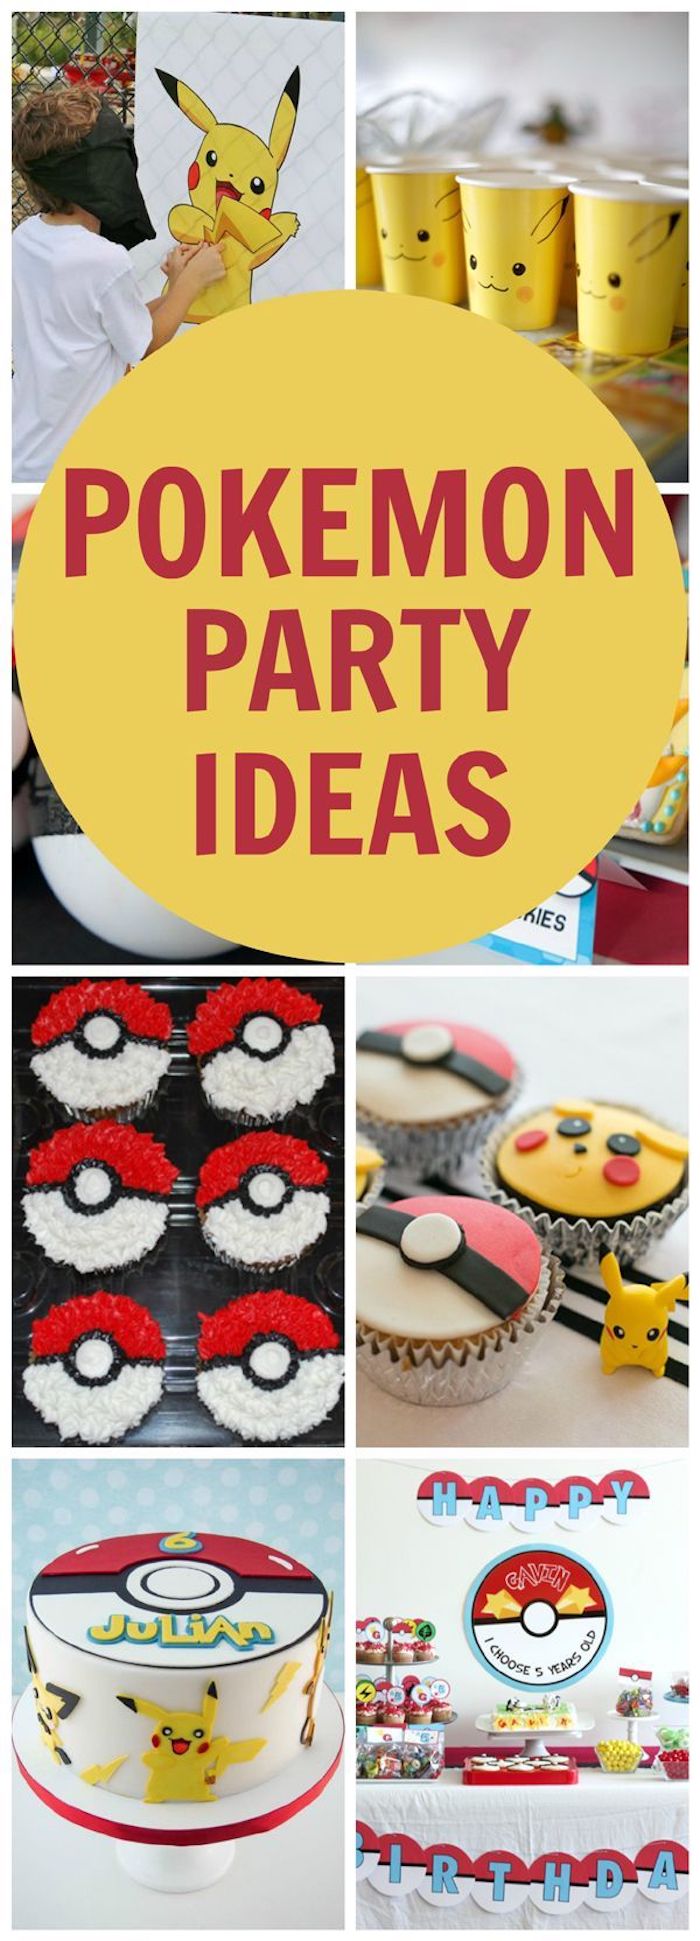 gâteau d anniversaire, party pokémon, muffins pokéball, comment faire un gateau, pokémon en papier